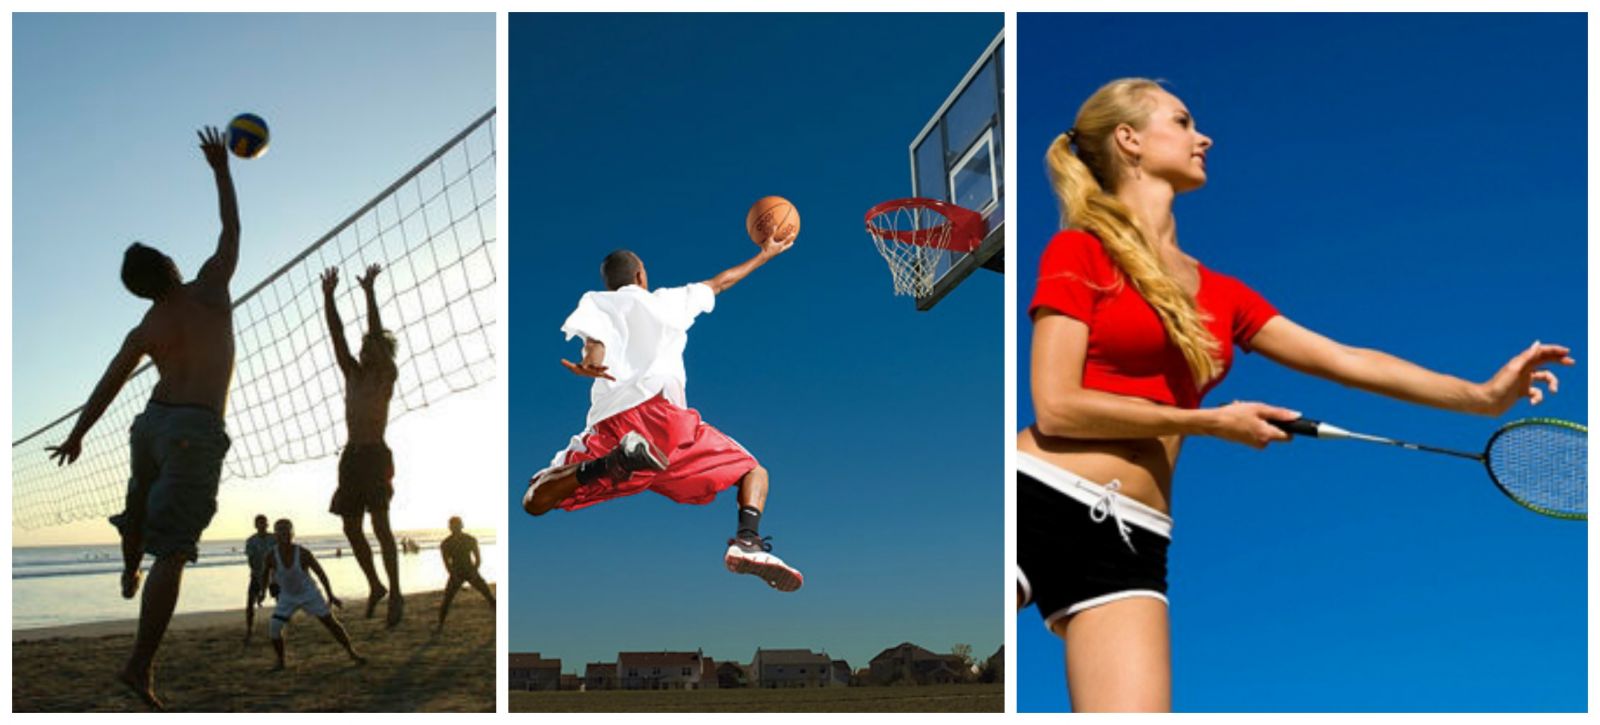 luyện tập các môn thể thao như cầu lông, bóng chuyền, bóng rổ giúp tăng chiều cao hiệu quả